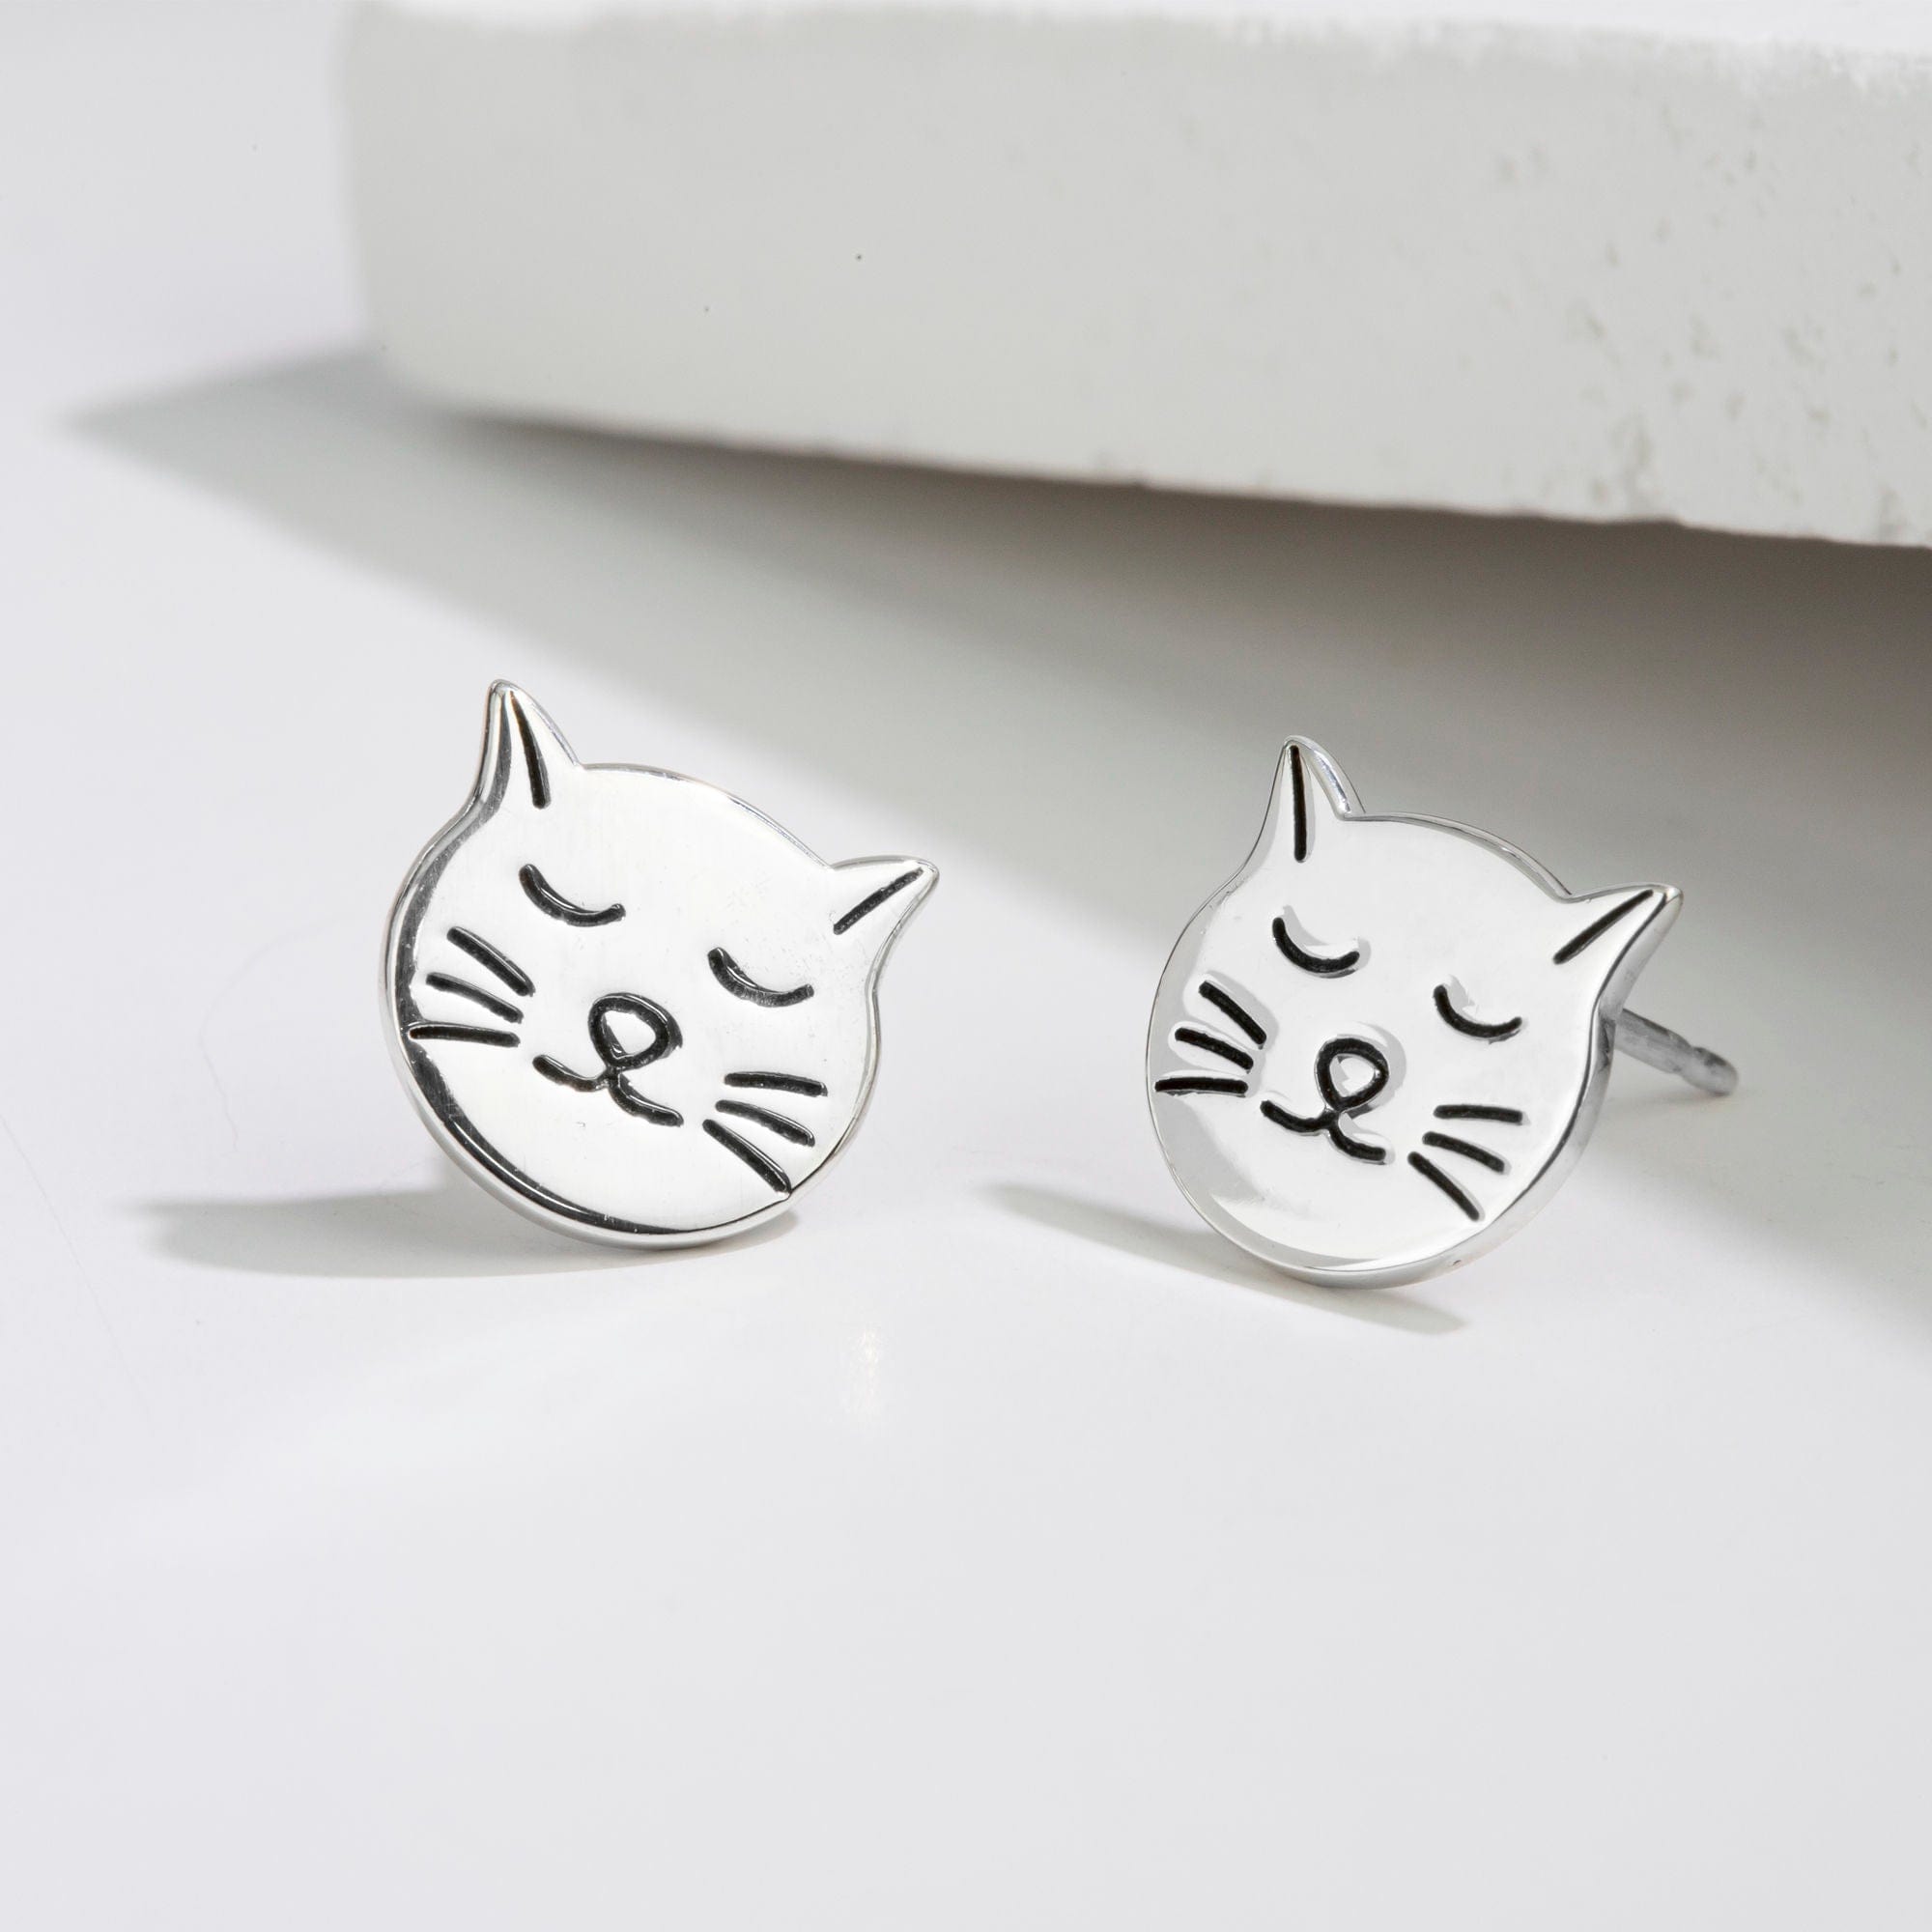 Boma Jewelry Earrings Sleepy Cat Stud Earrings